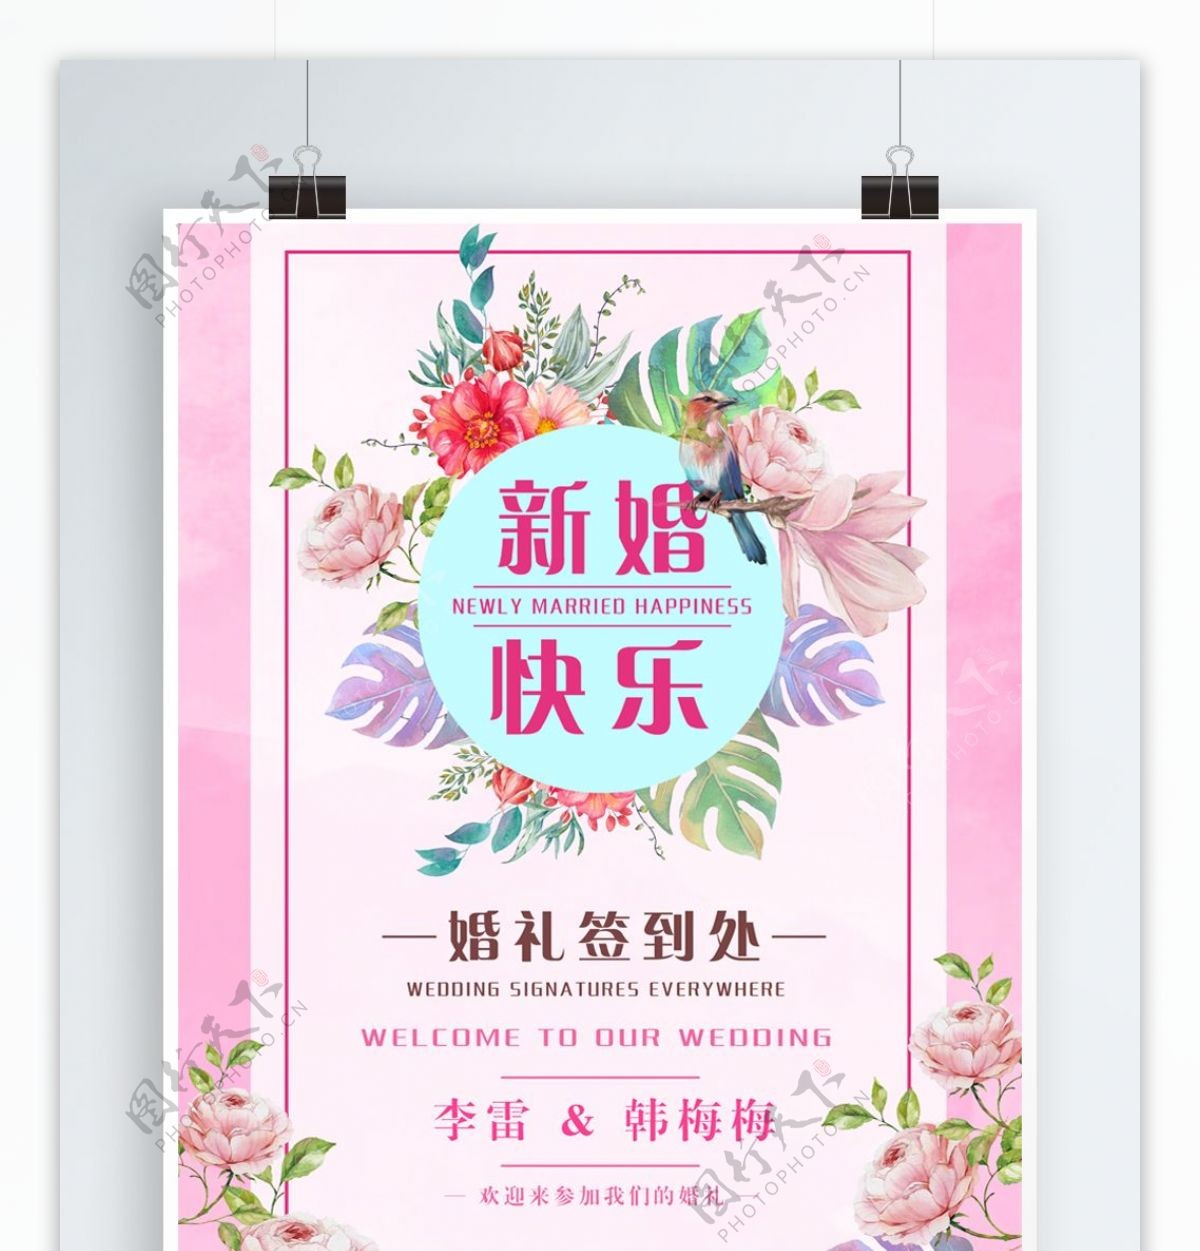 简单清新粉红色婚礼节日海报